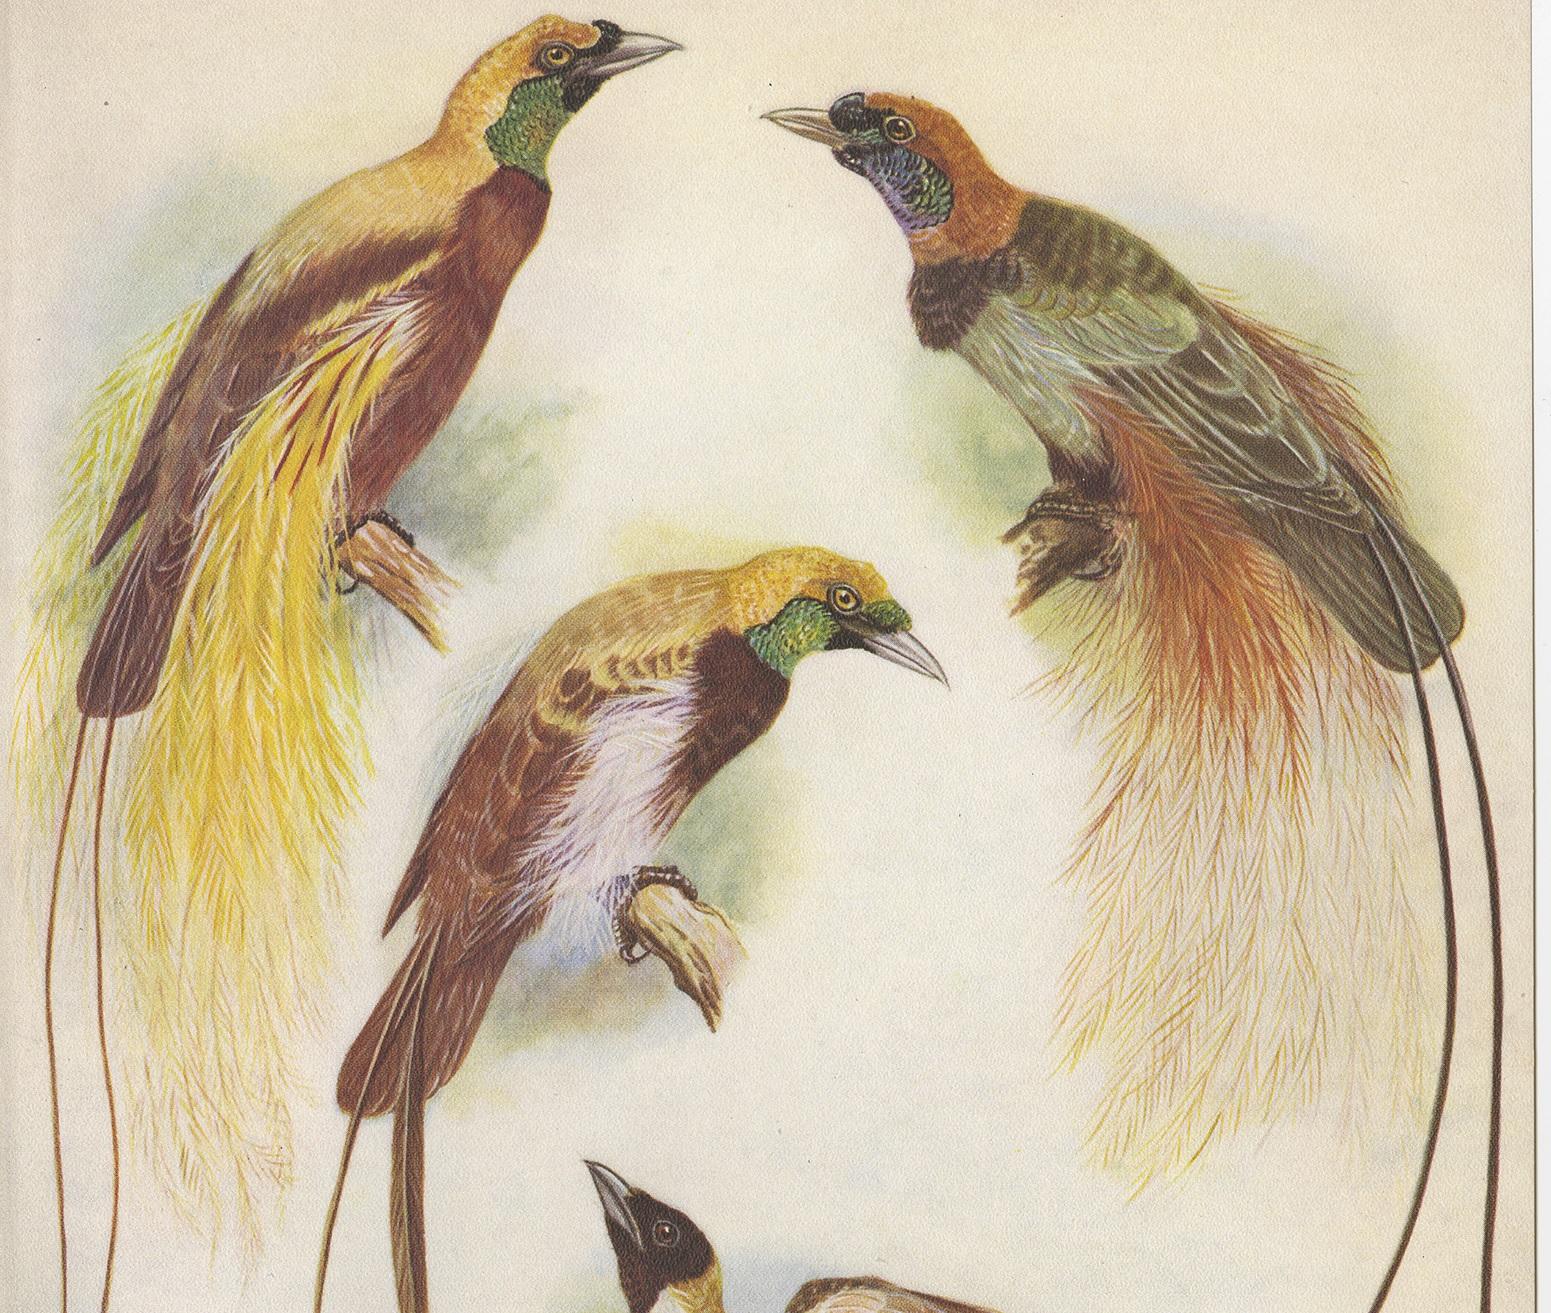 Dekorativer Druck zur Illustration des Blutparadiesvogels und des Kleinen Paradiesvogels. Dieser authentische Druck stammt aus 